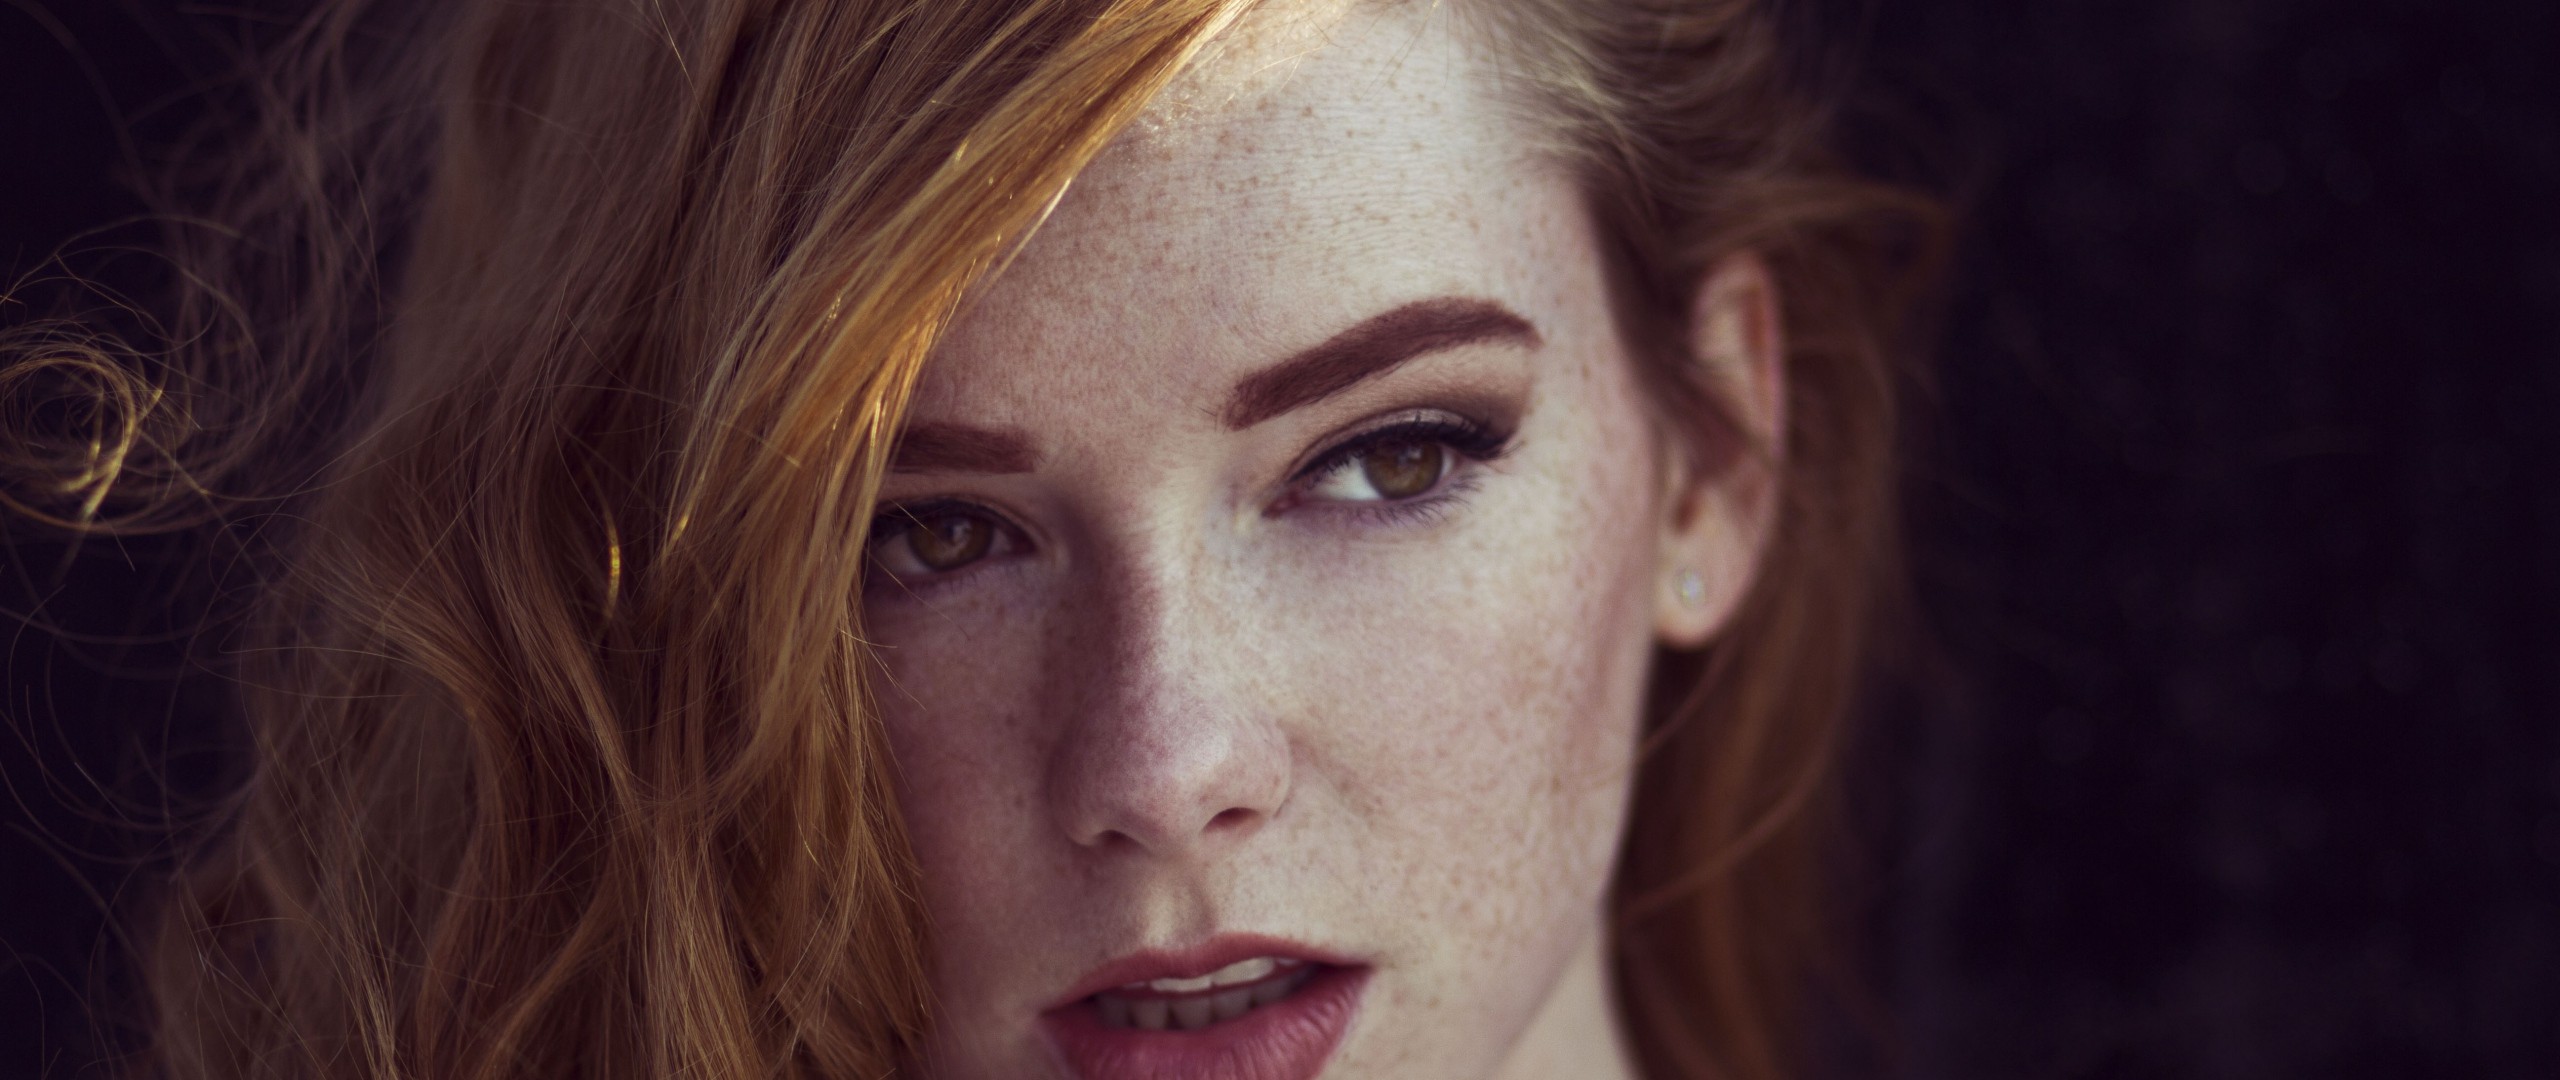 People 2560x1080 redhead face brown eyes women Hattie Watson looking away freckles model closeup ultrawide